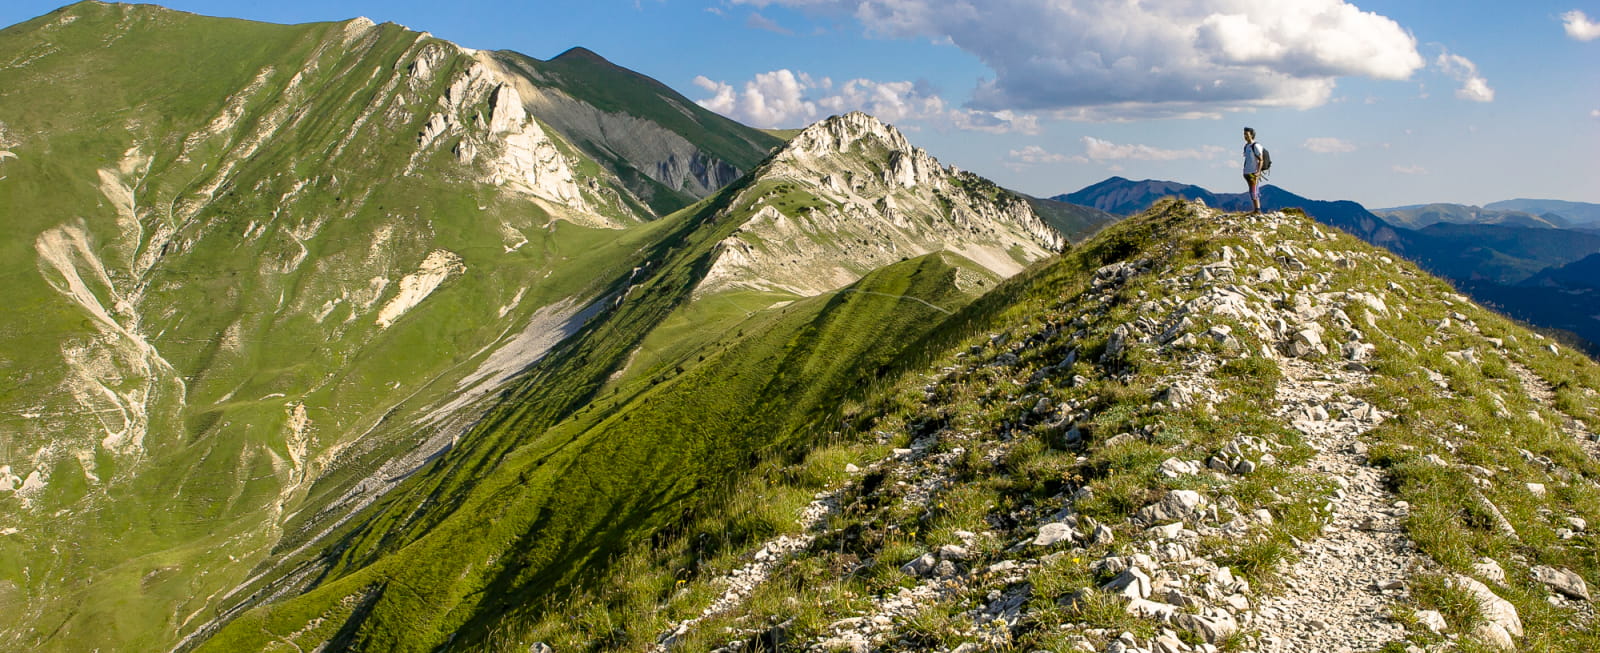 Activités sportives dans la Drôme - randonnée sur la crète de Jiboui dans le Vercors et randonneur - Top des spots nature de la Drôme